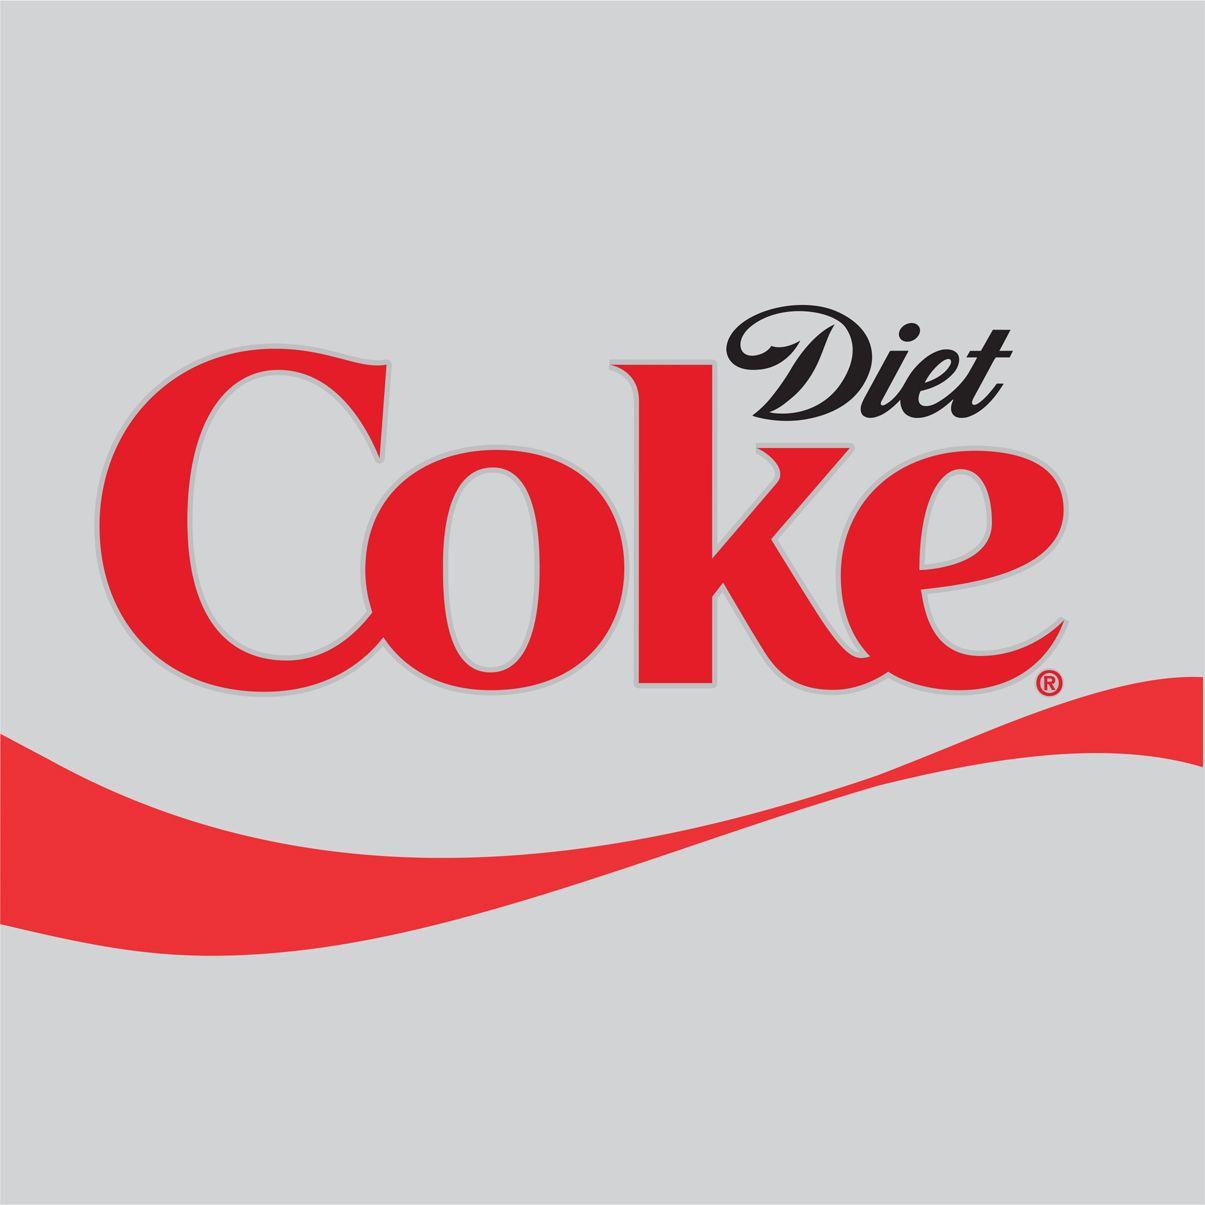 Coke Logo - Image - Diet Coke LOGO 2014.jpg | Logopedia | FANDOM powered by Wikia